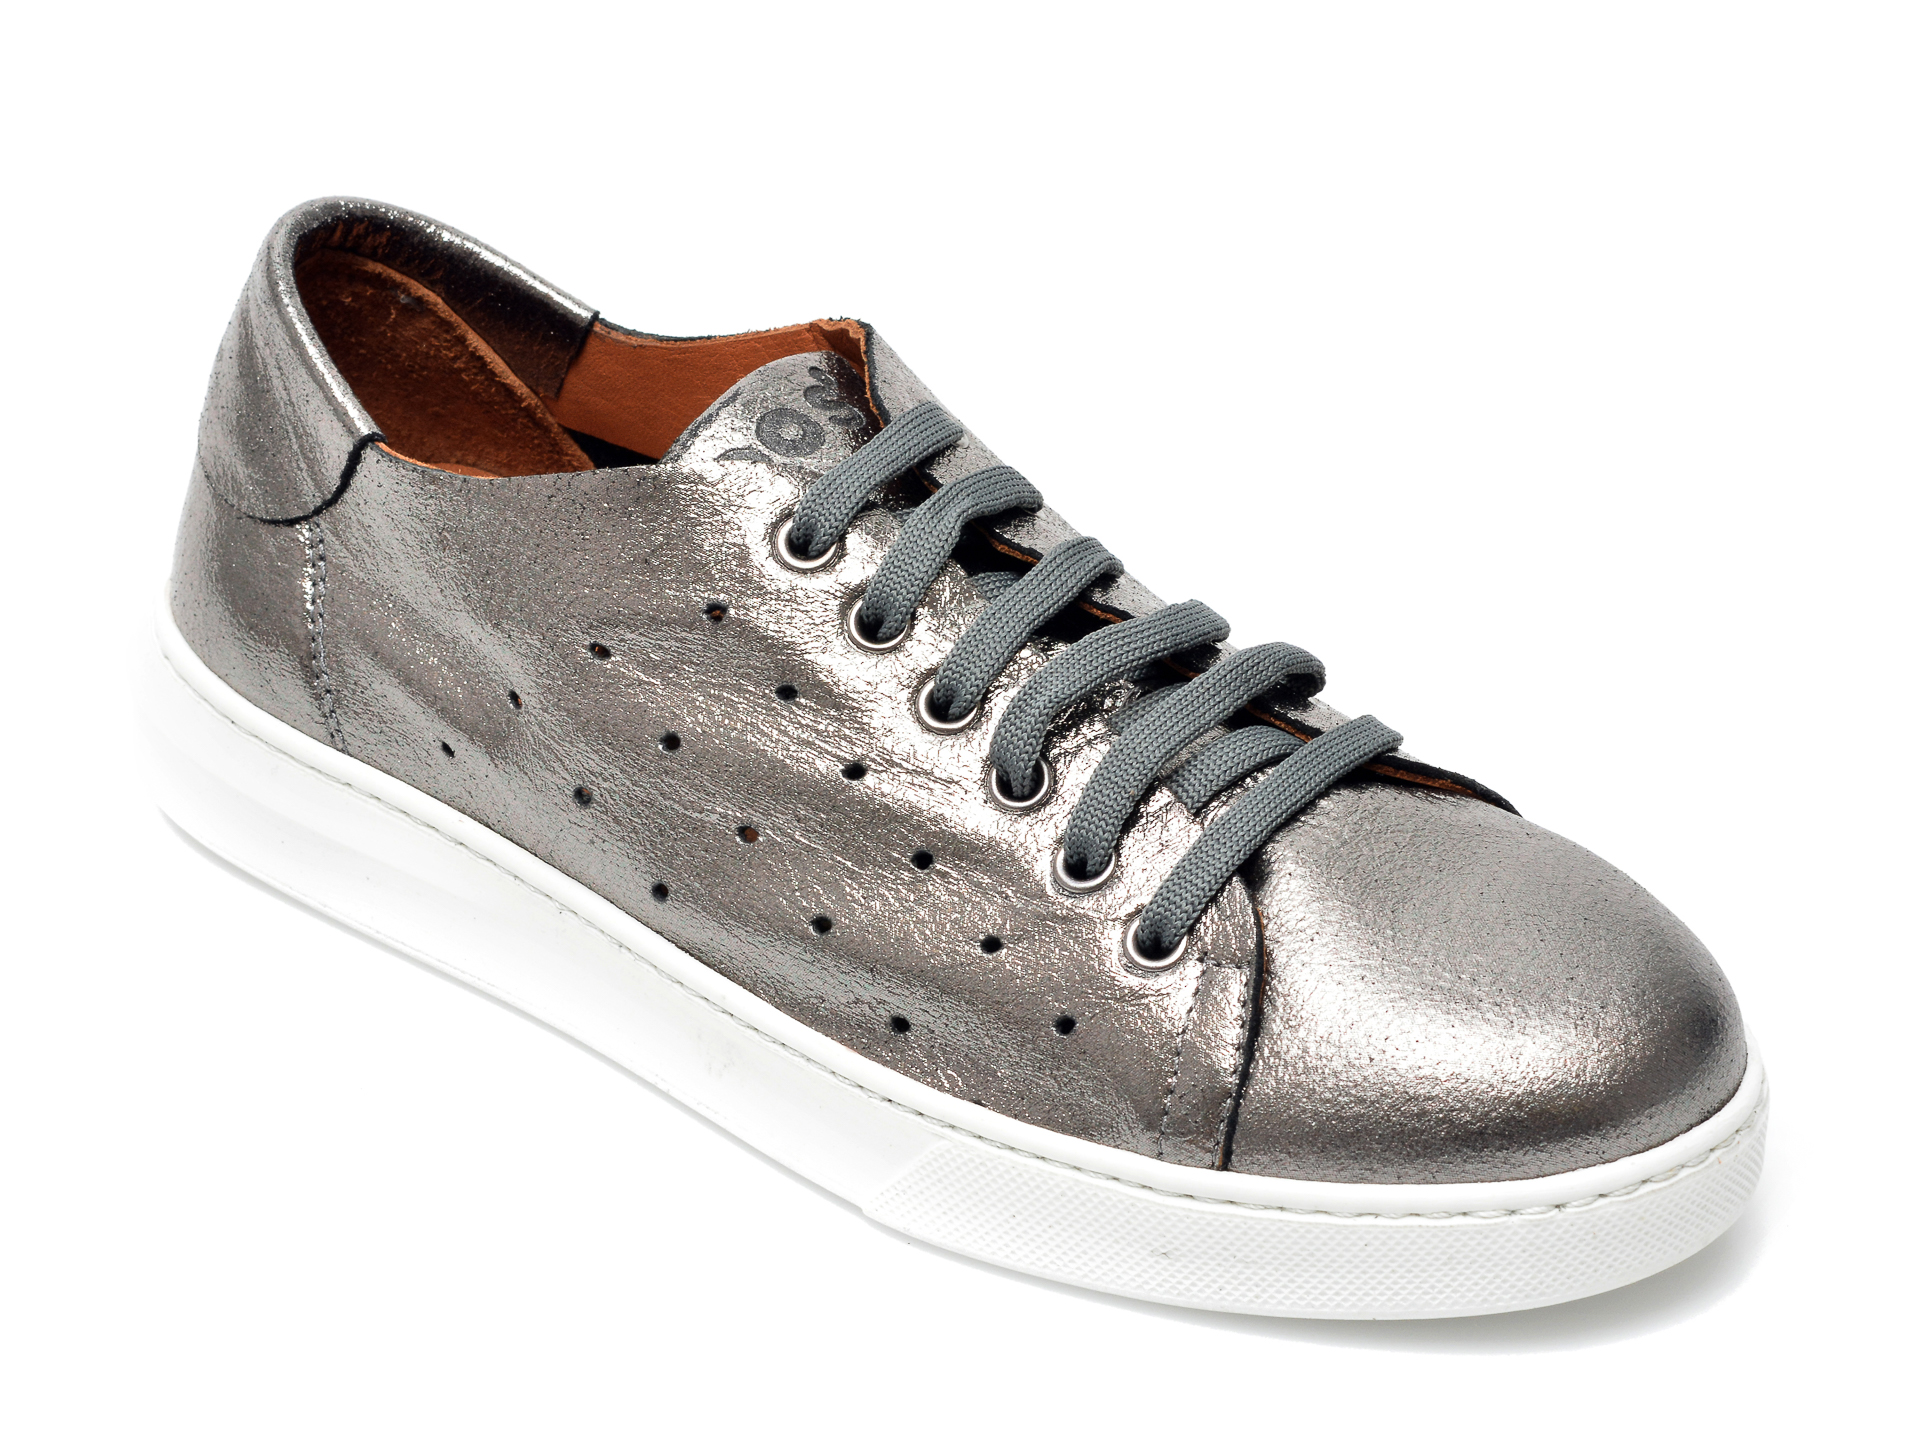 Pantofi BABOOS argintii, 2301, din piele naturala